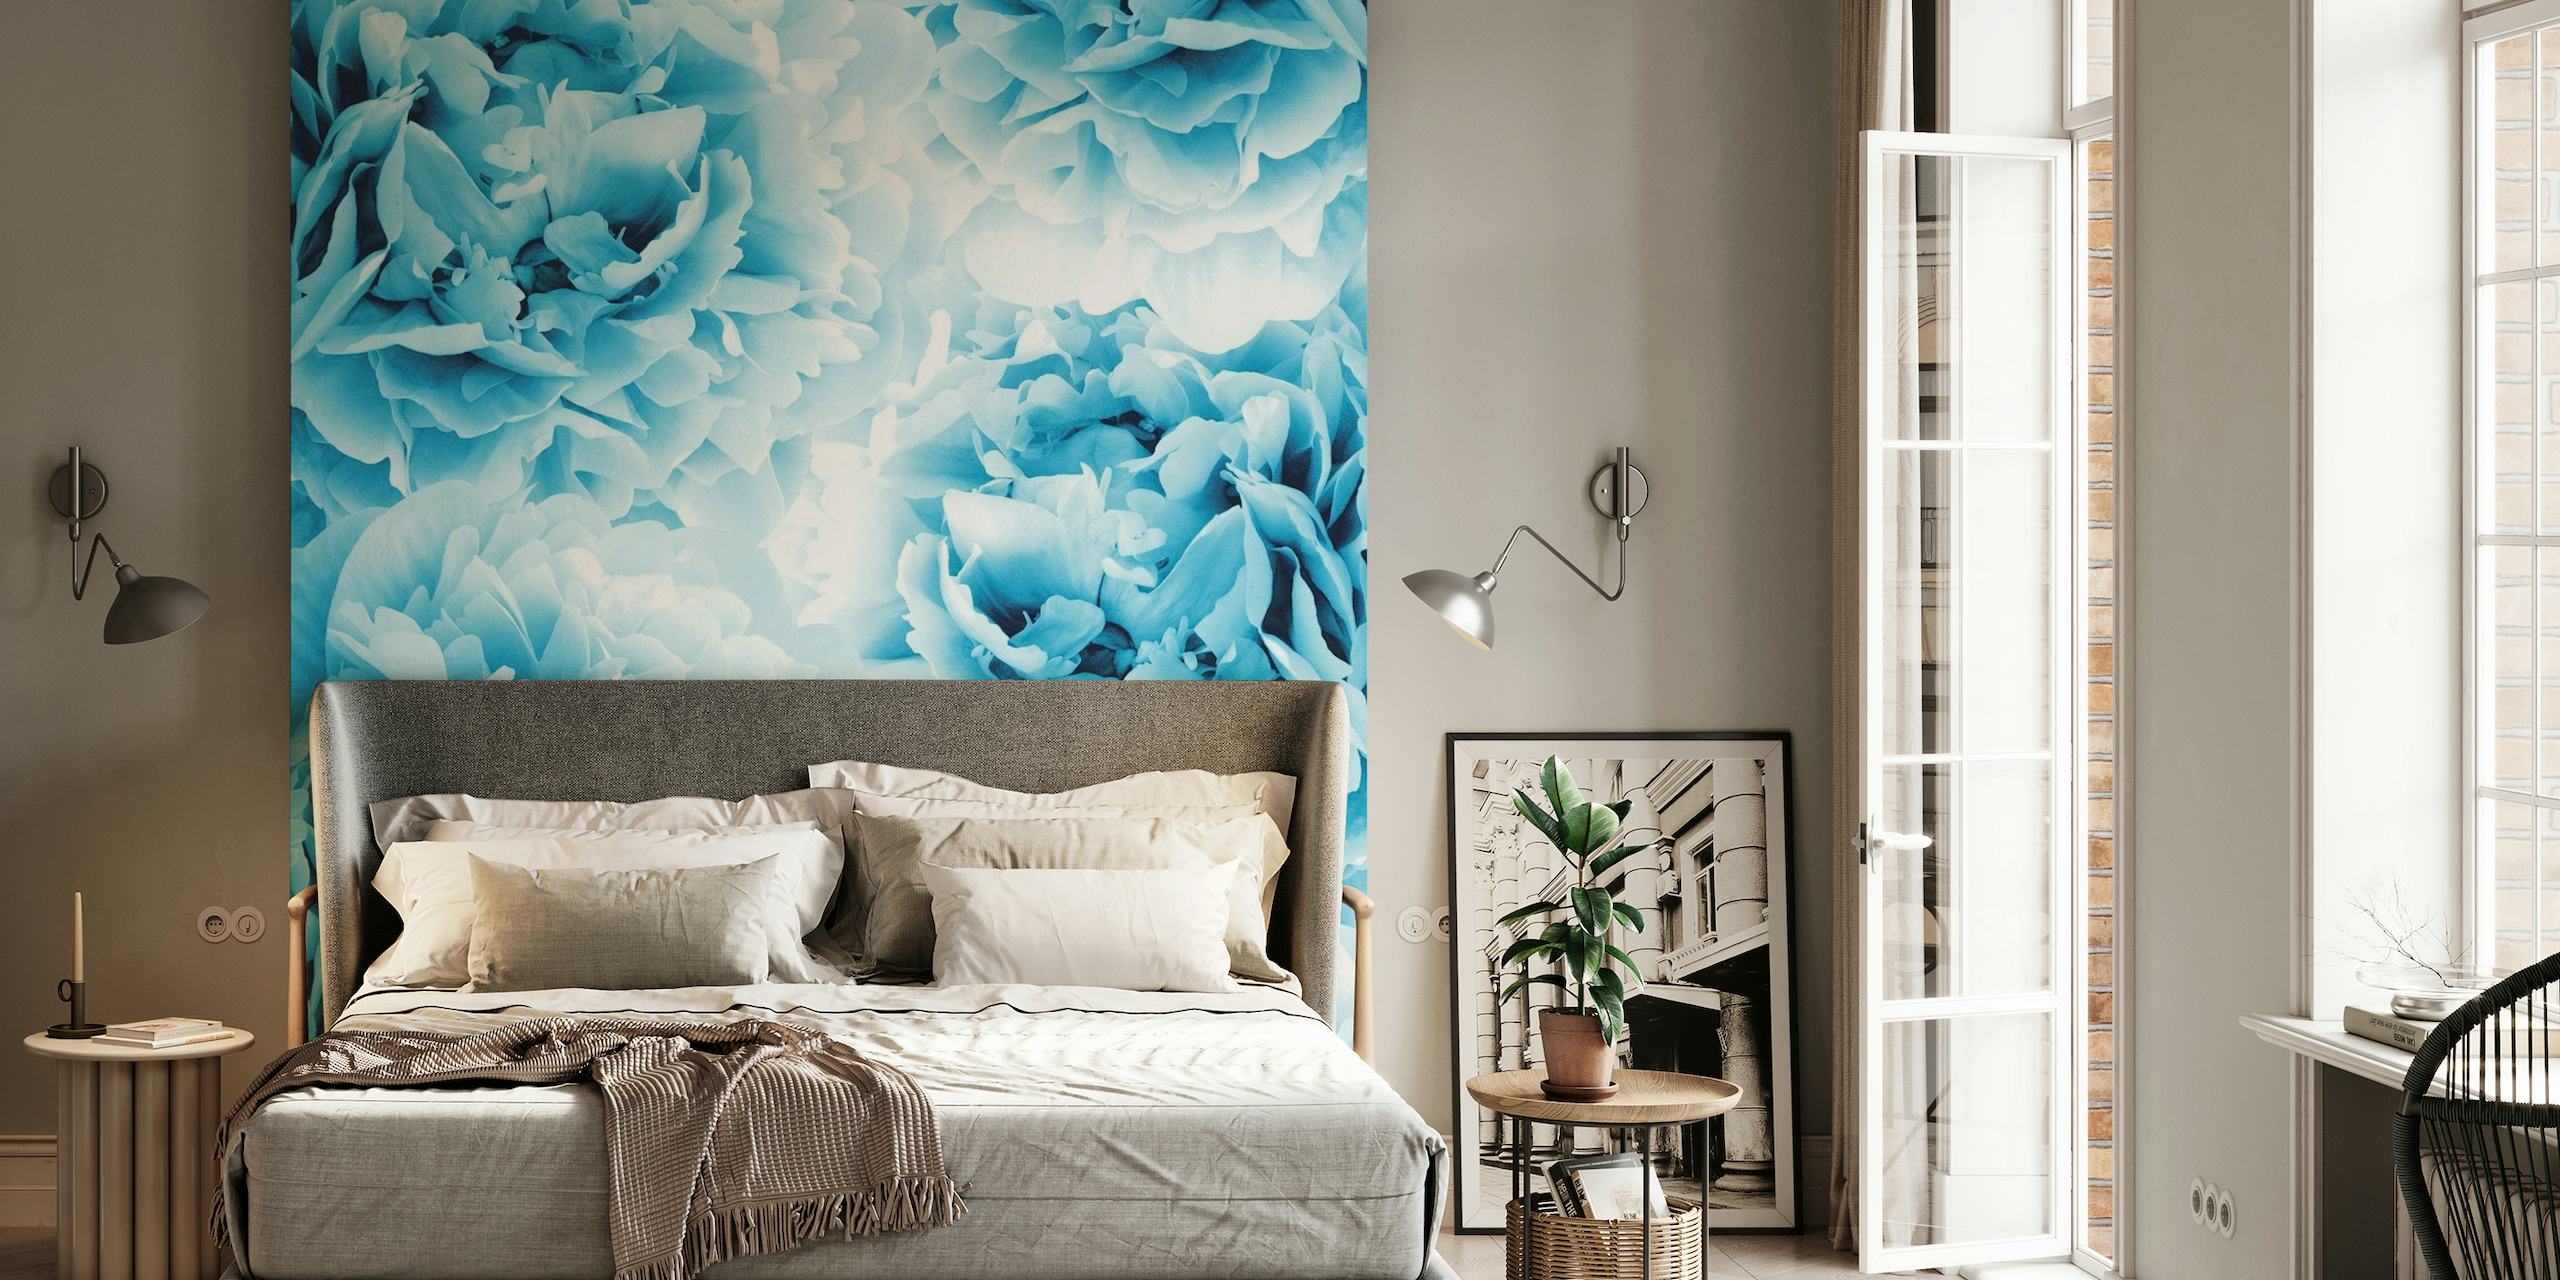 Elegant blue peonies wall mural for a serene room atmosphere